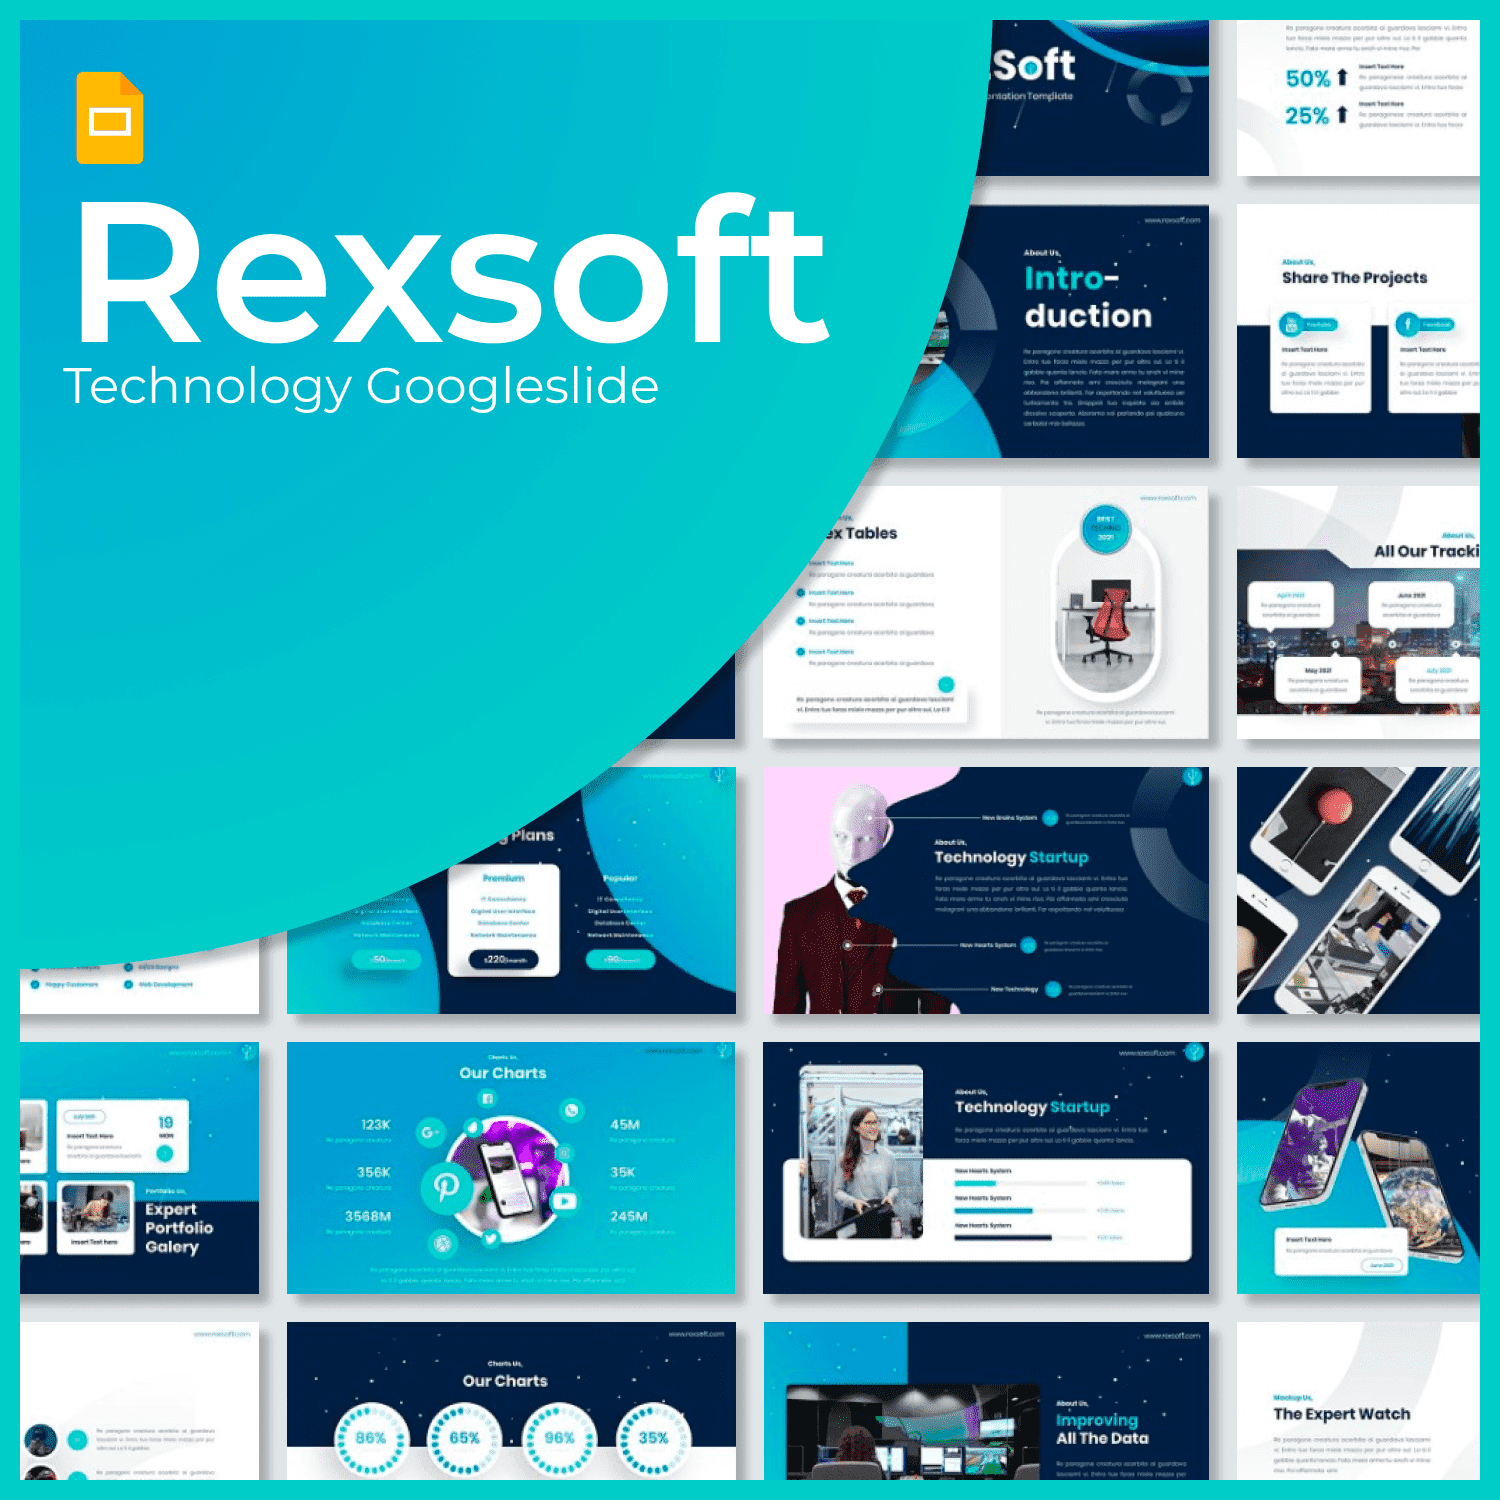 Rexsoft - Technology Googleslide main cover.